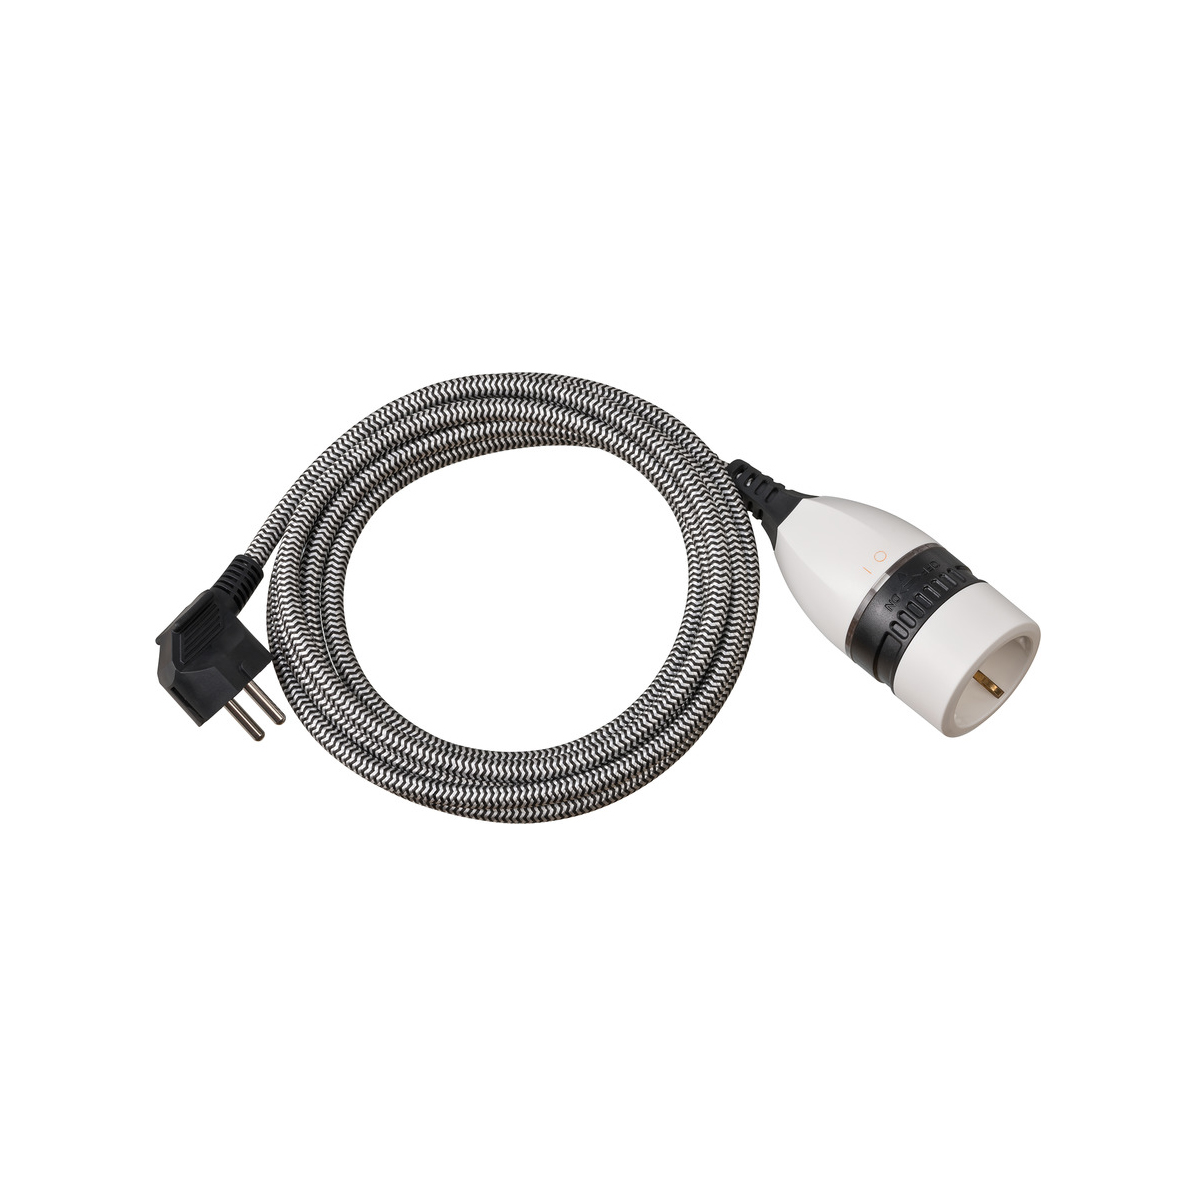 Удлинитель-переноска Brennenstuhl Quality Plastic Extension кабель 3 м черный/белый IP20 H05VV-F 3G1,5 1161830